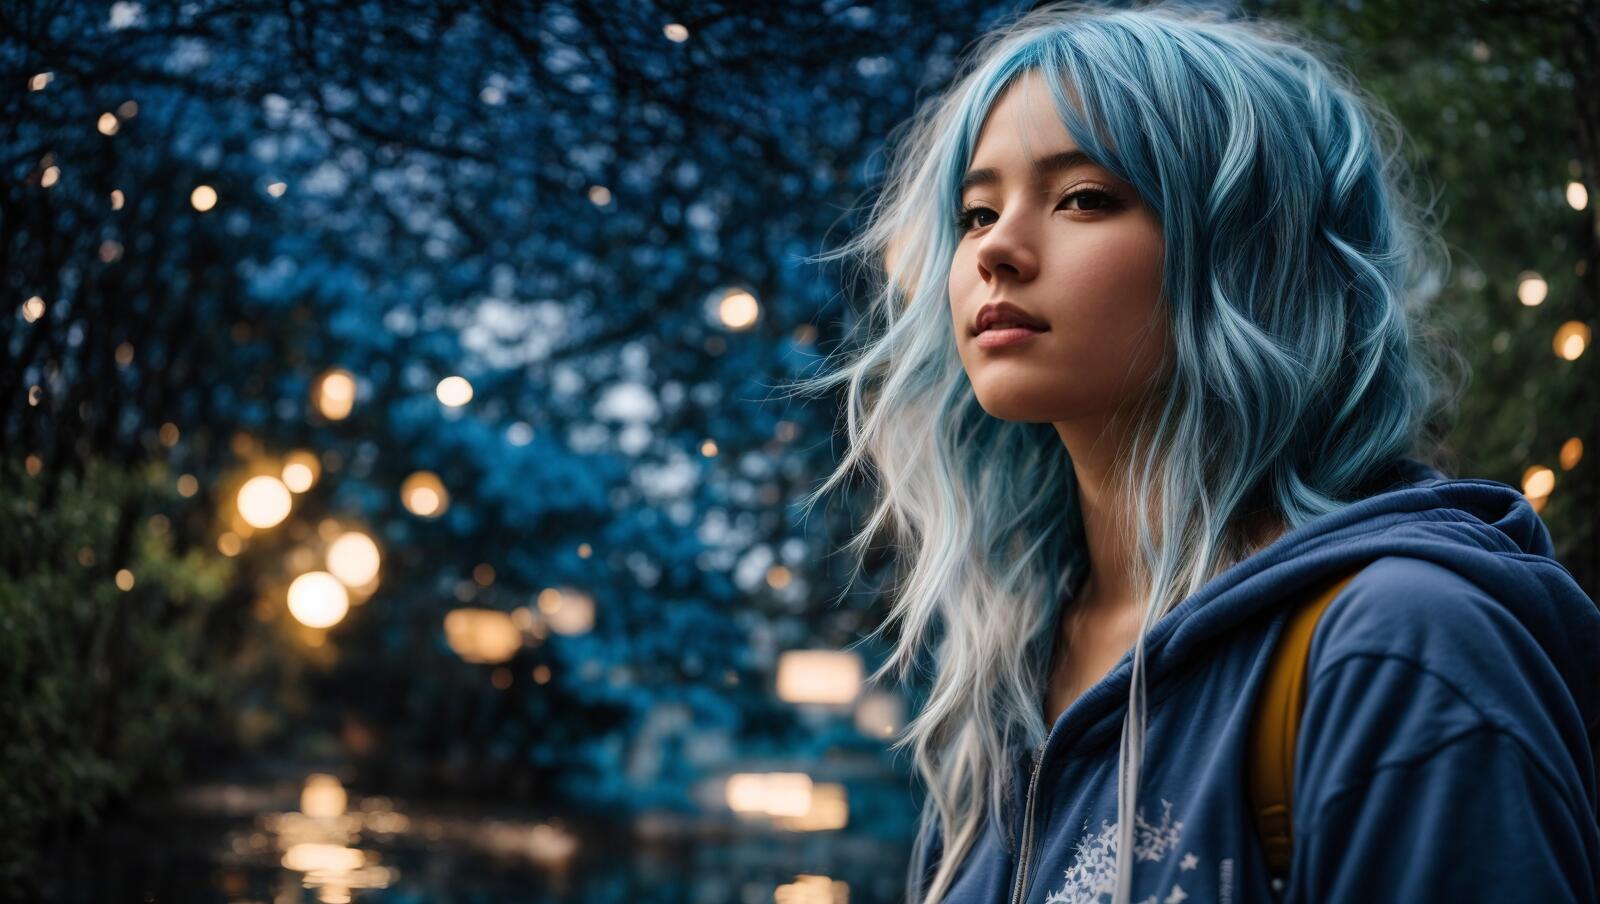 Бесплатное фото Азиатская девушка с голубыми волосами и макияжем пристально смотрит на что-то на заднем плане